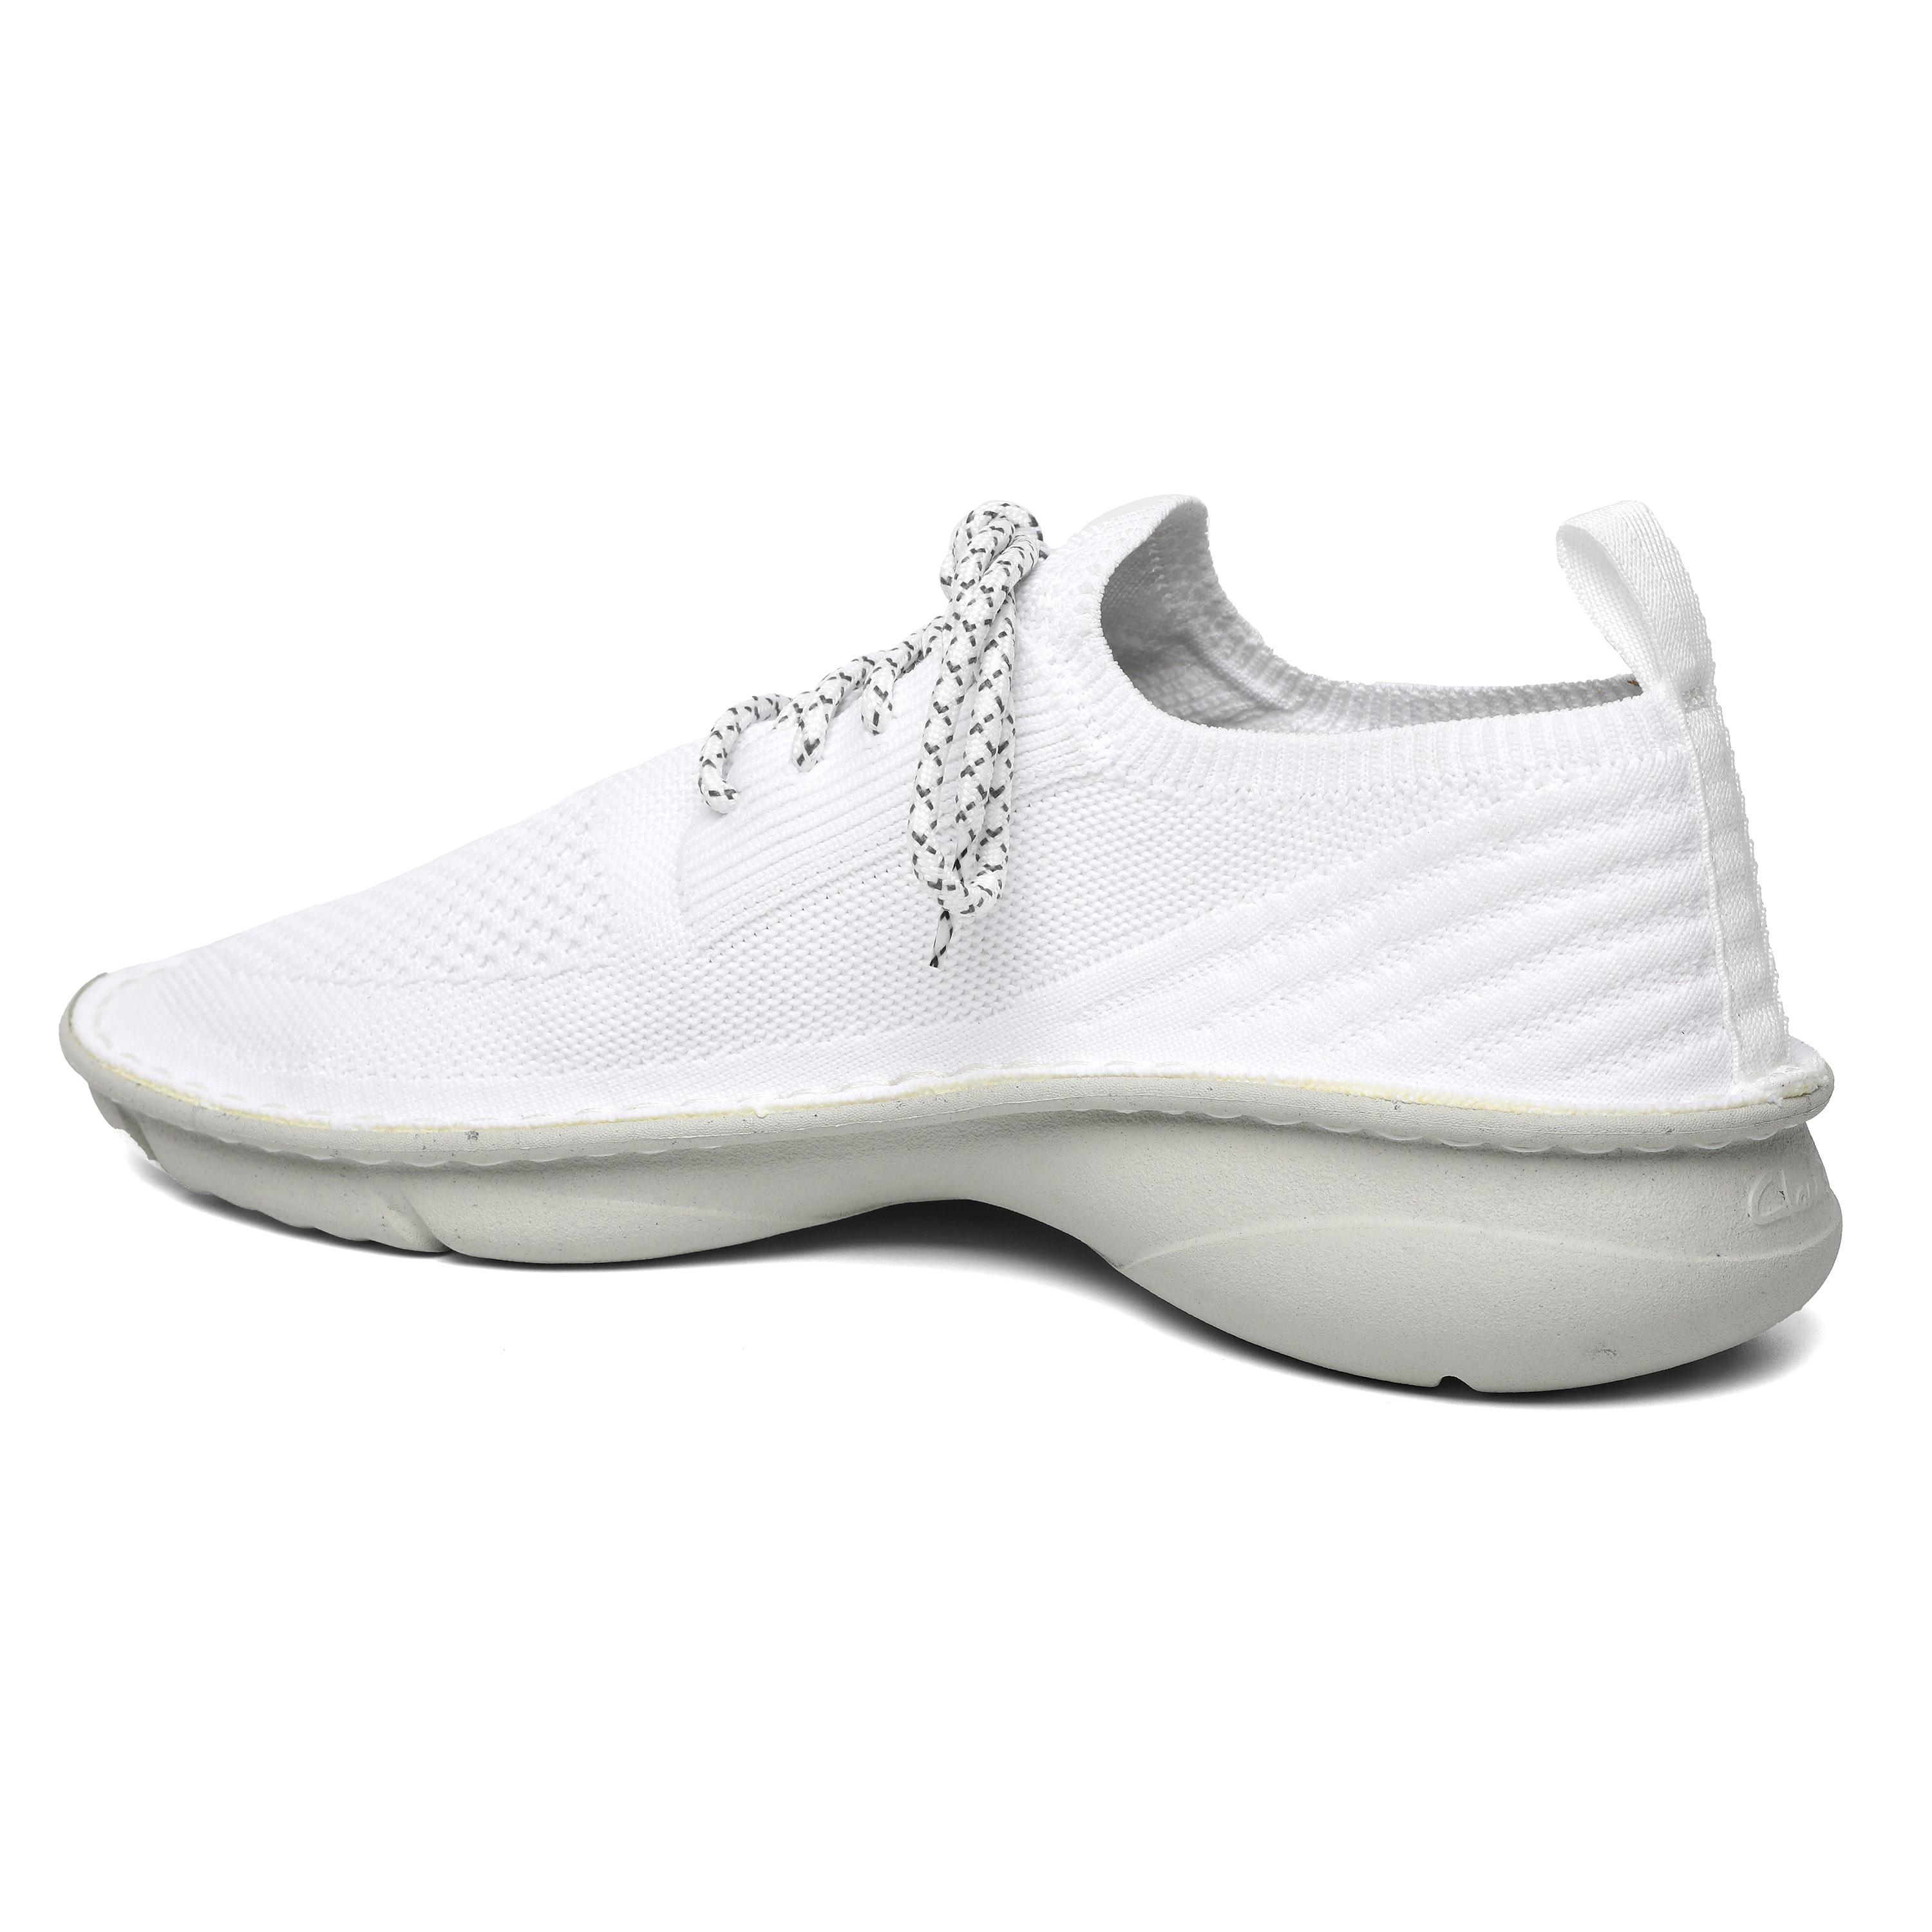 Женские кроссовки Clarks, белые, цвет белый, размер 36 - фото 5